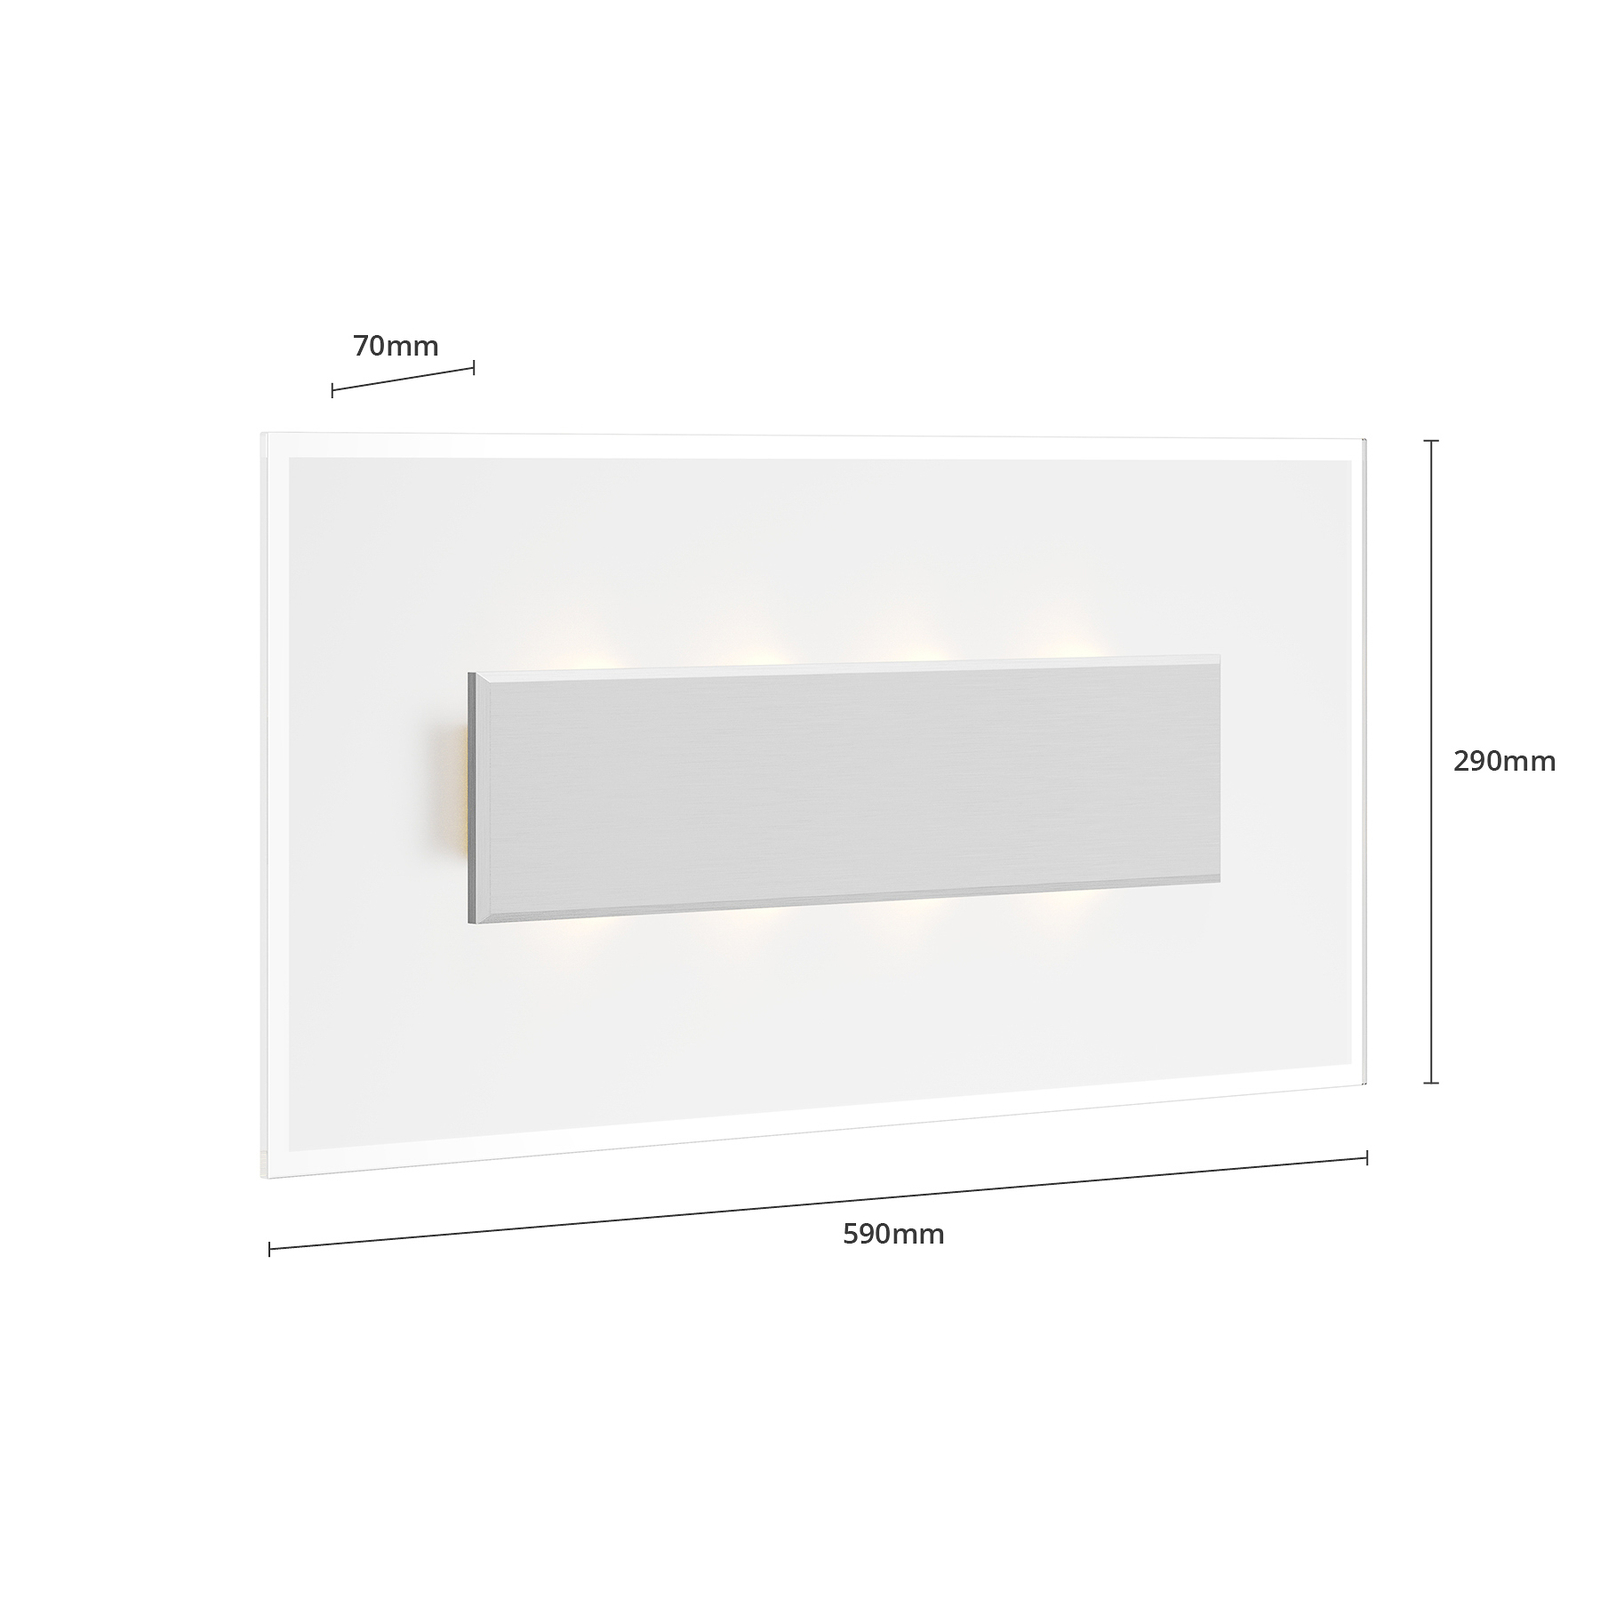 Quitani LED nástěnné svítidlo Lole, hliník, 59 x 29 cm, sklo